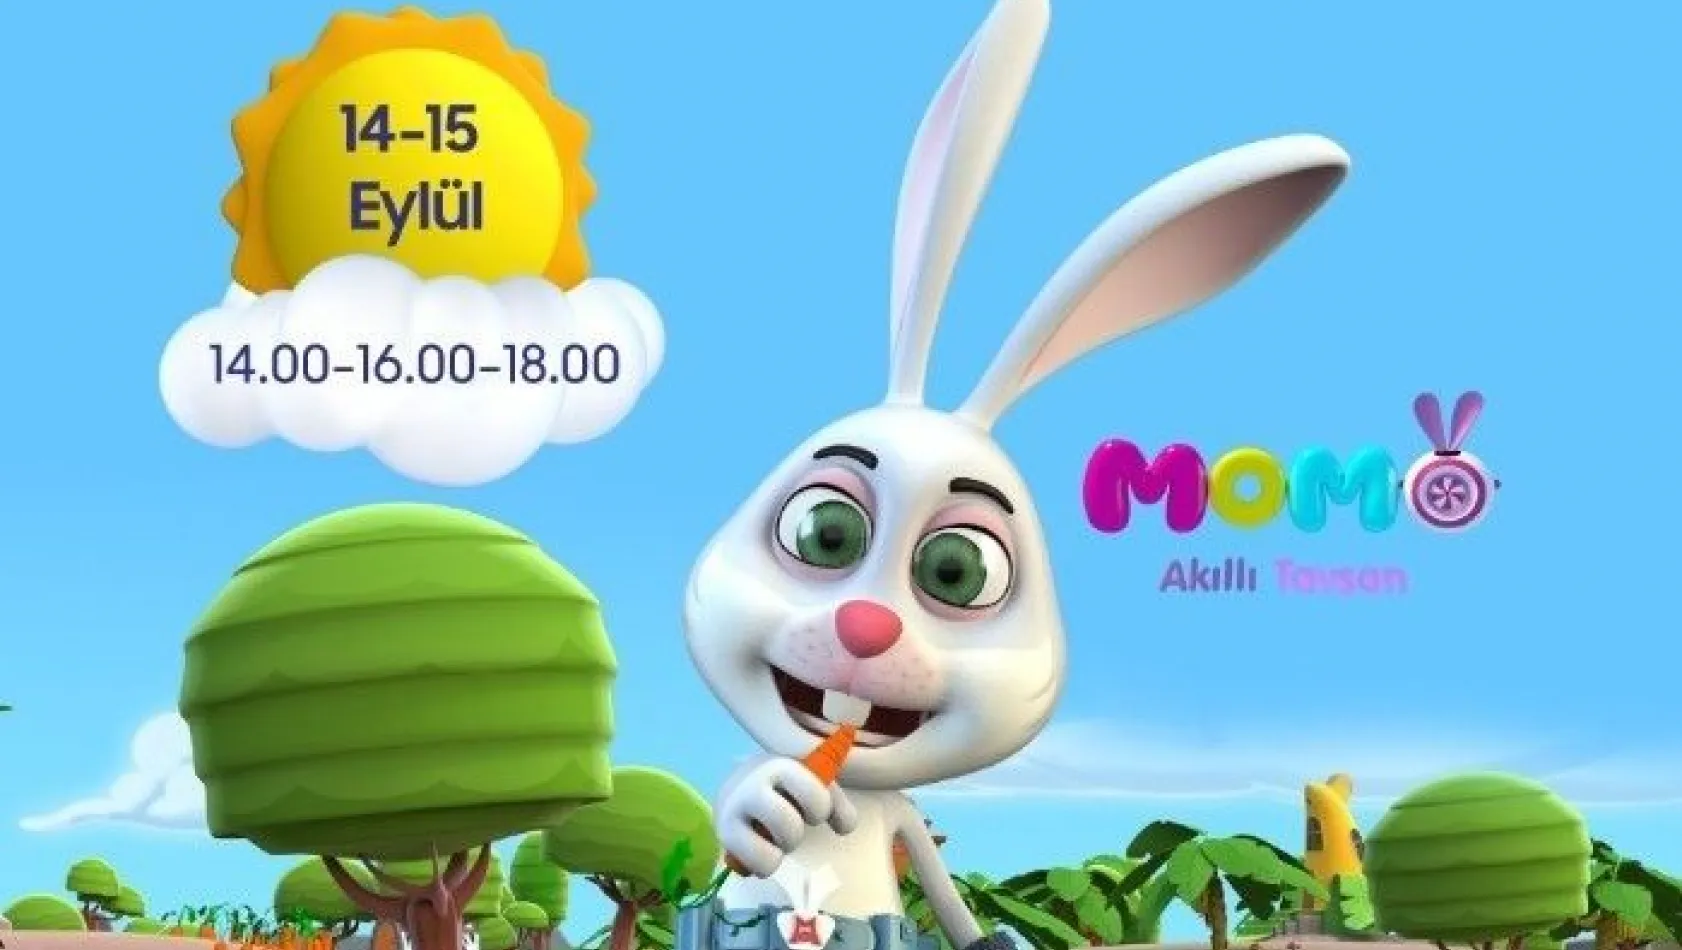 Akıllı Tavşan Momo Forum Kayseri'de
